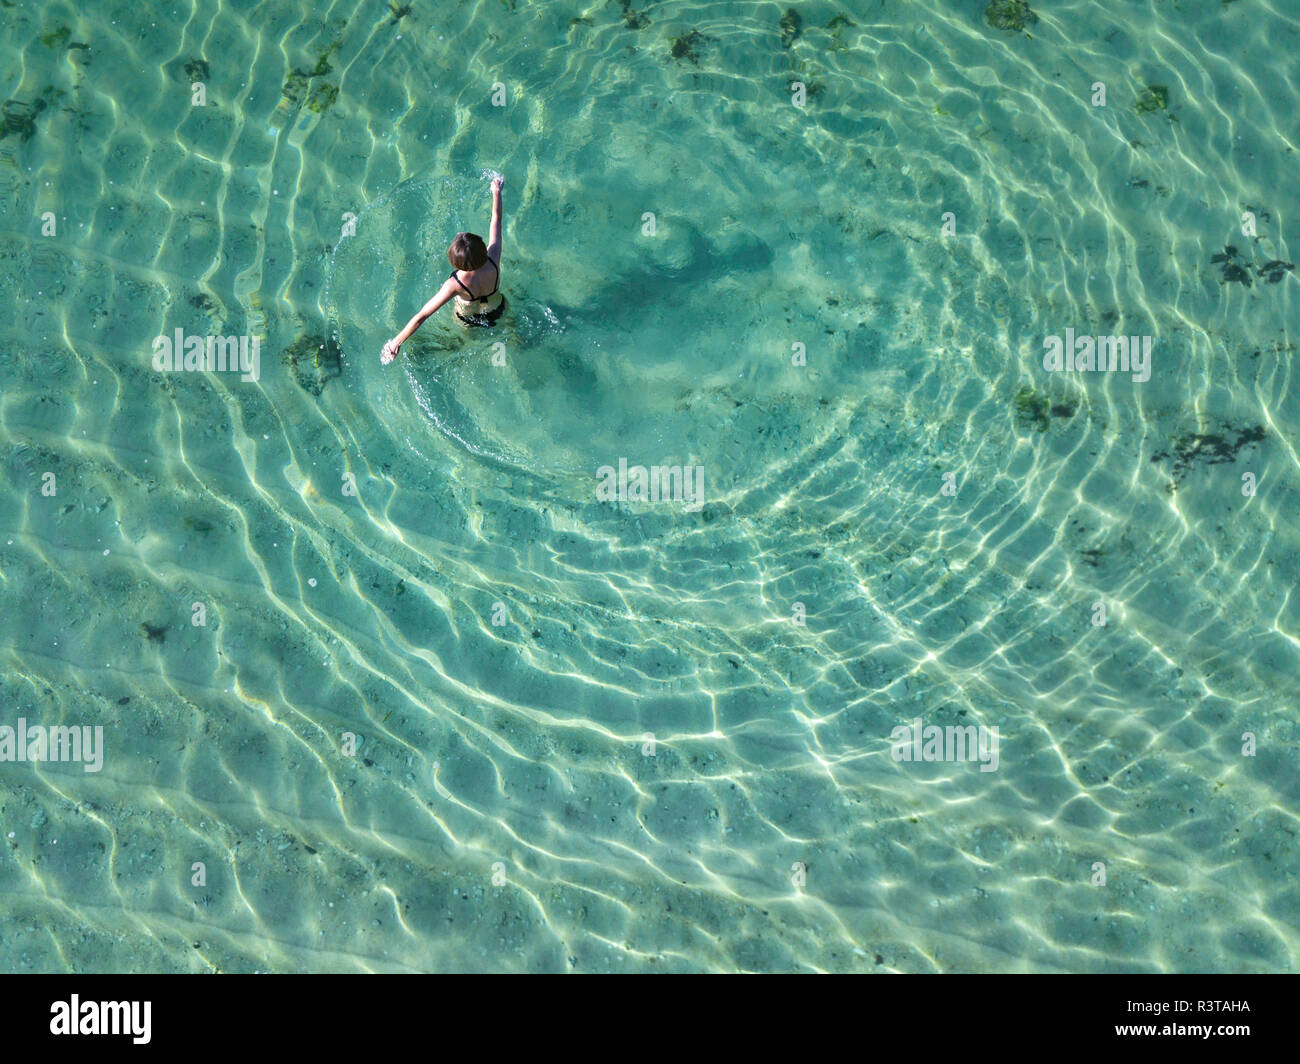 Indonesia, Bali, Melasti, vista aerea del Karma Kandara beach, una donna in acqua Foto Stock